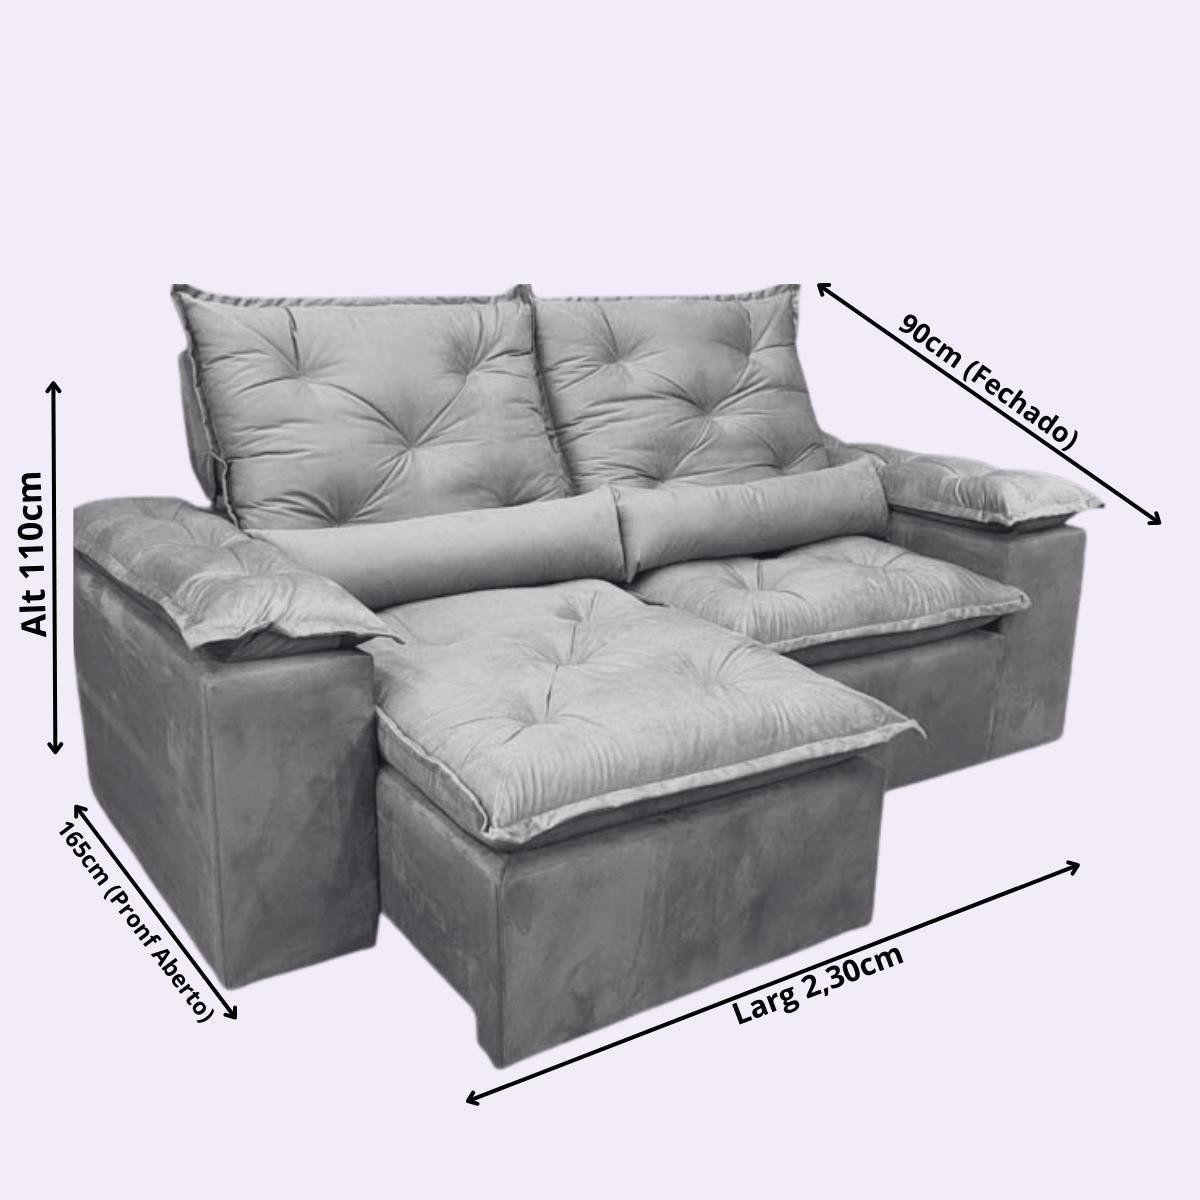 Sofa Reclinavel Retratil Design Elegante Athena 2,30m Veludo Cor:Verde - 6